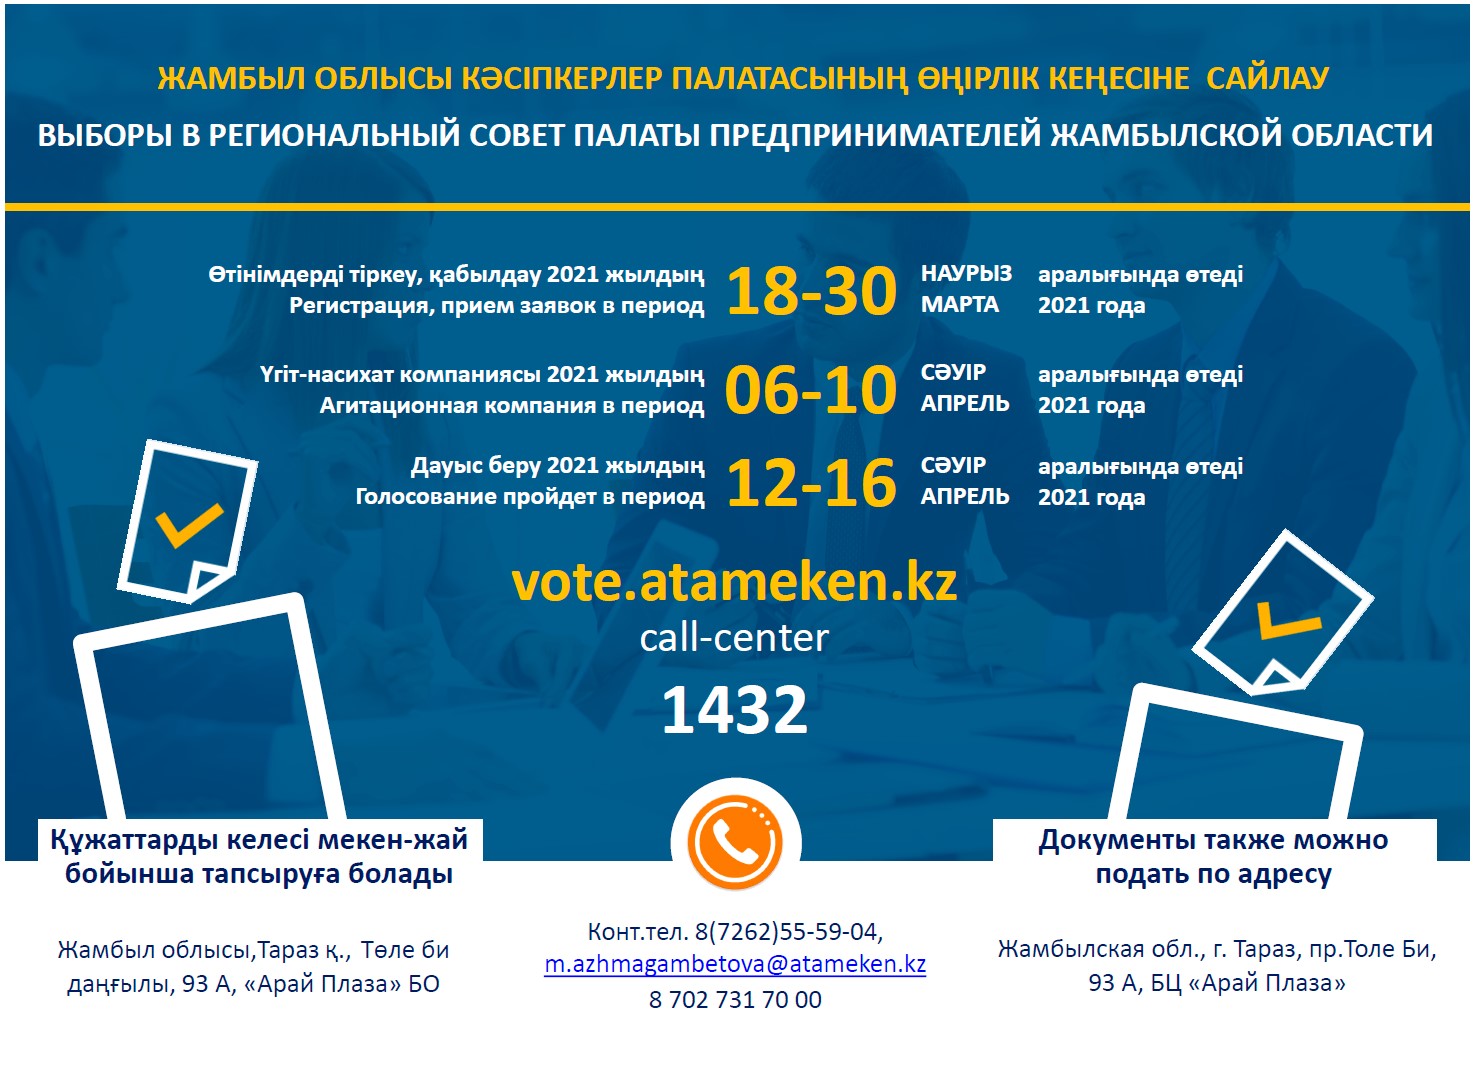 Регистрация кандидата на участие в выборах в Региональный совет Палаты предпринимателей Жамбылской области